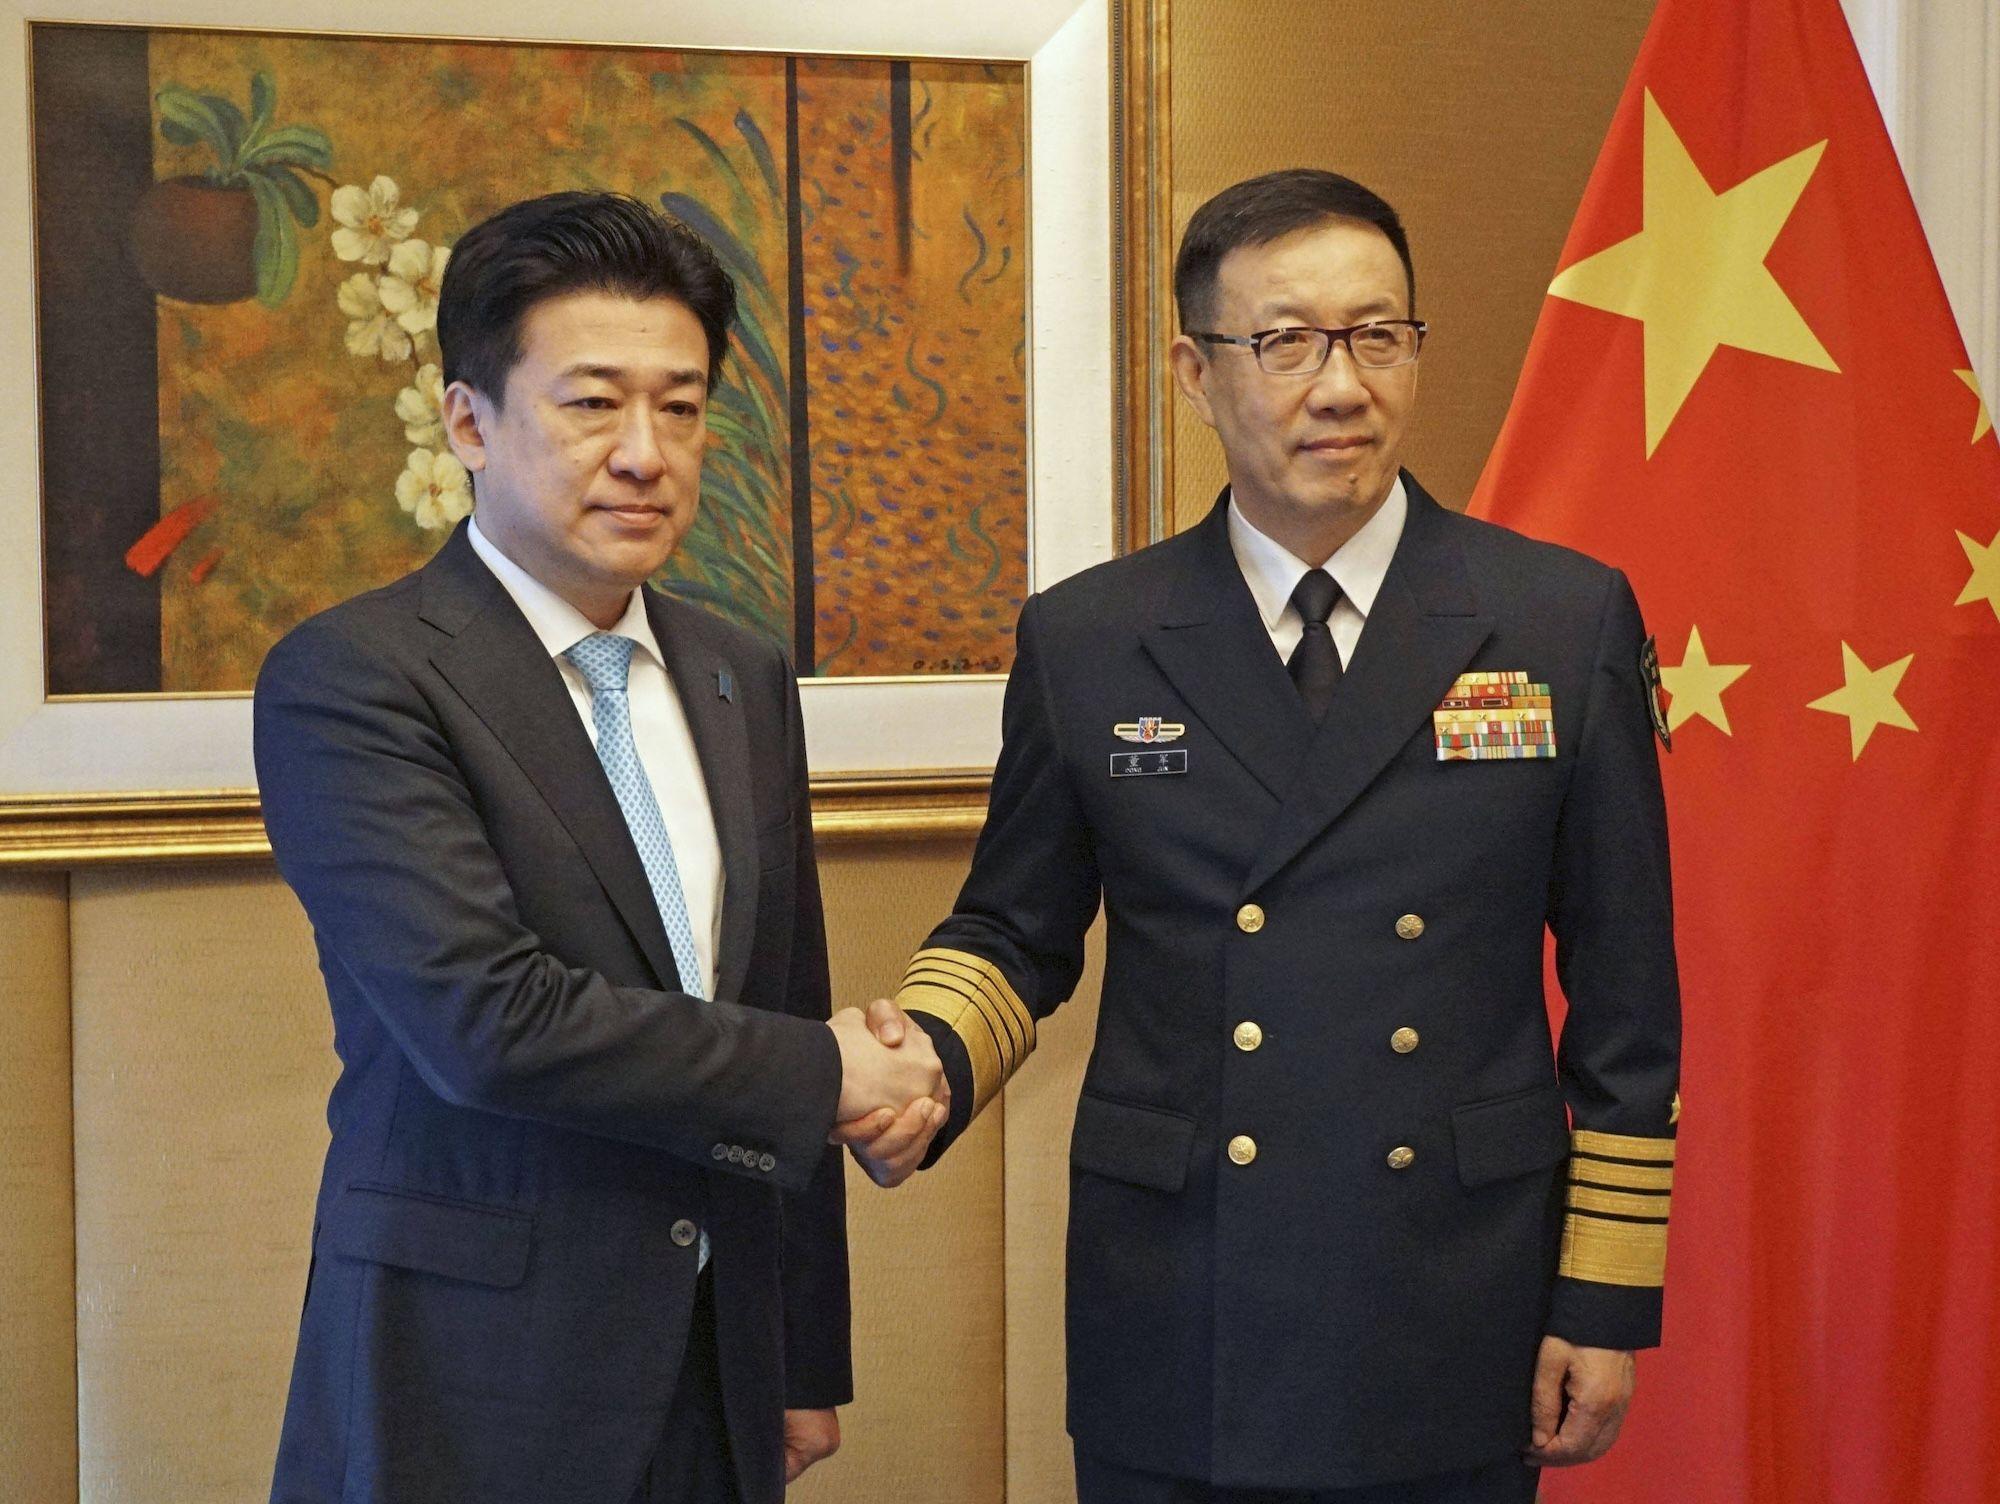 Der japanische Verteidigungsminister Minoru Kihara (L) schüttelt seinem chinesischen Amtskollegen Dong Jun während eines Treffens in Singapur die Hand